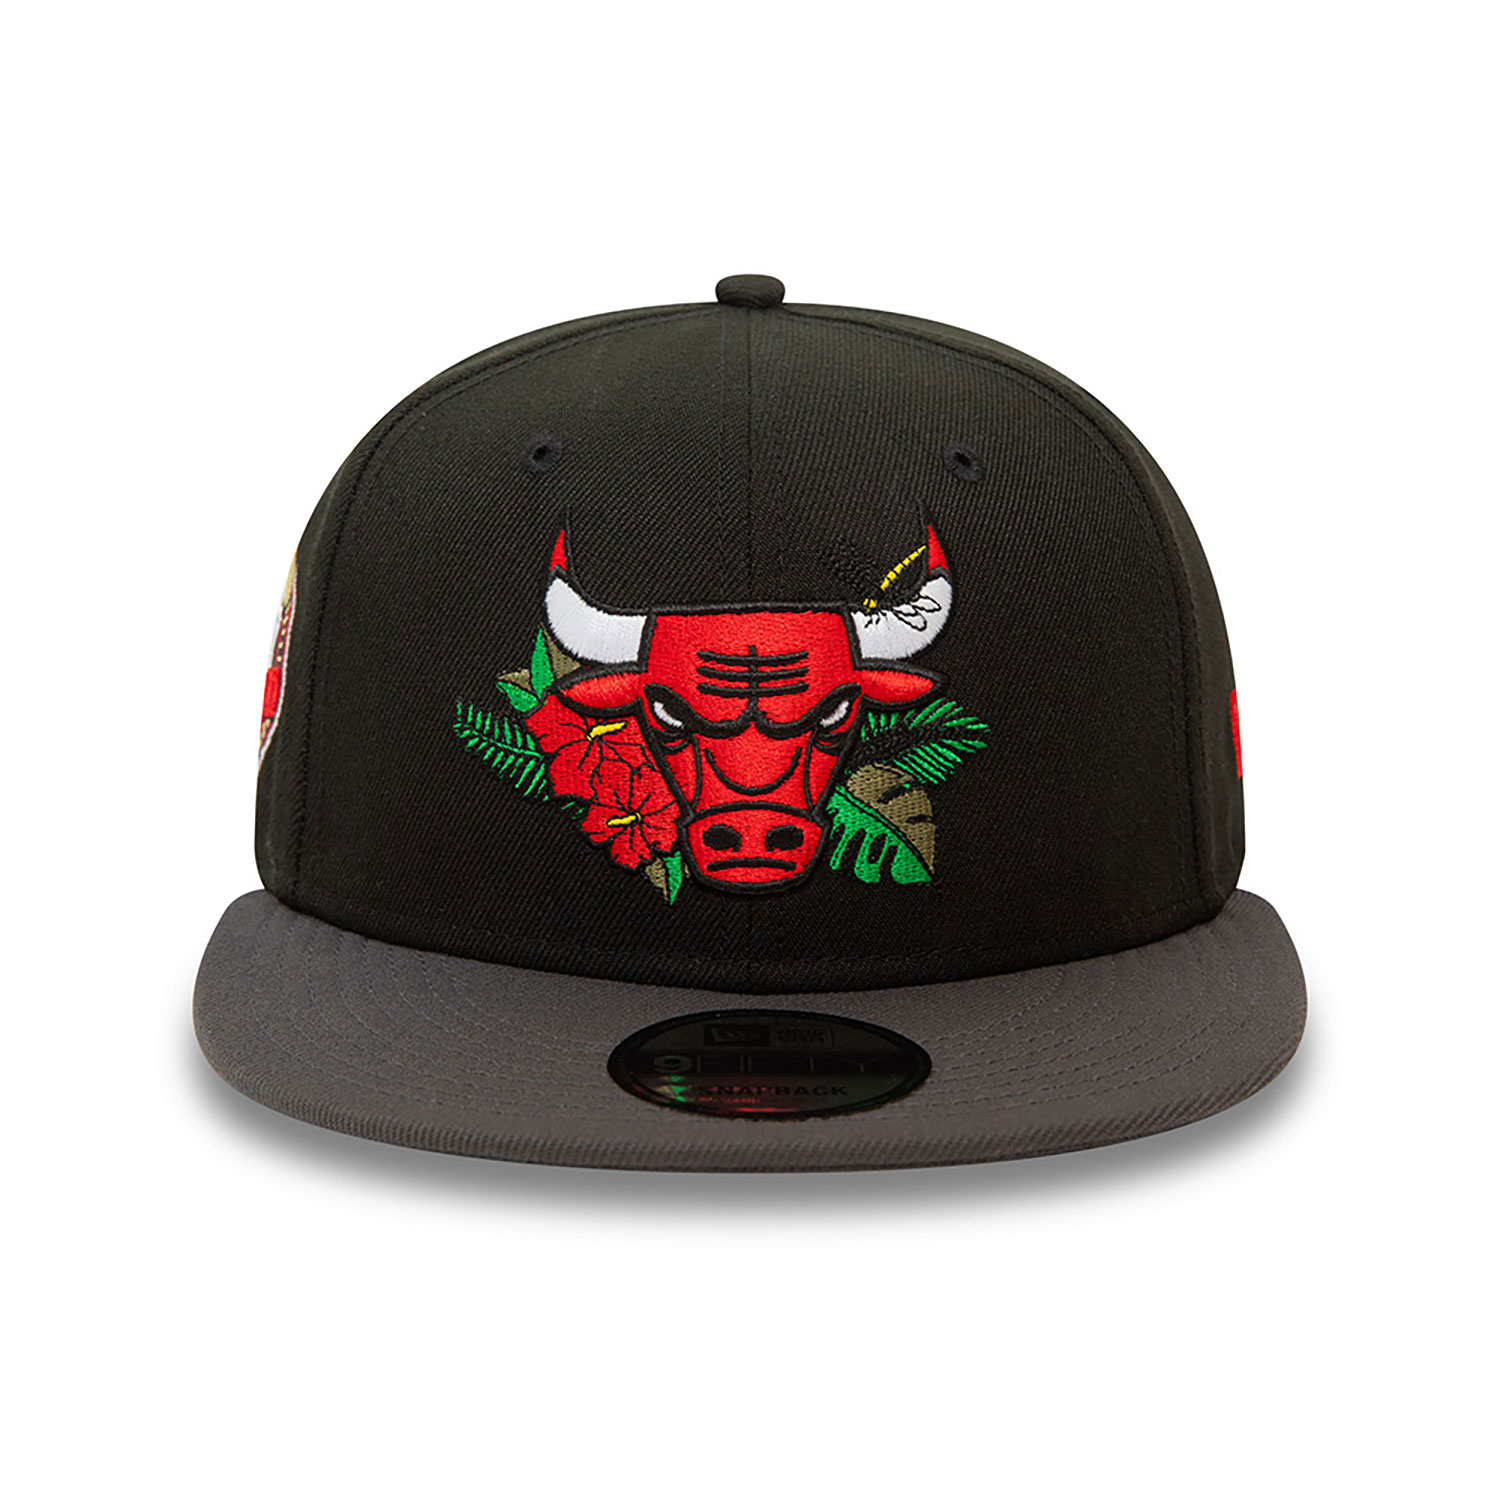 Chicago Bulls NBA Floral Black 9FIFTY Snapback Cap